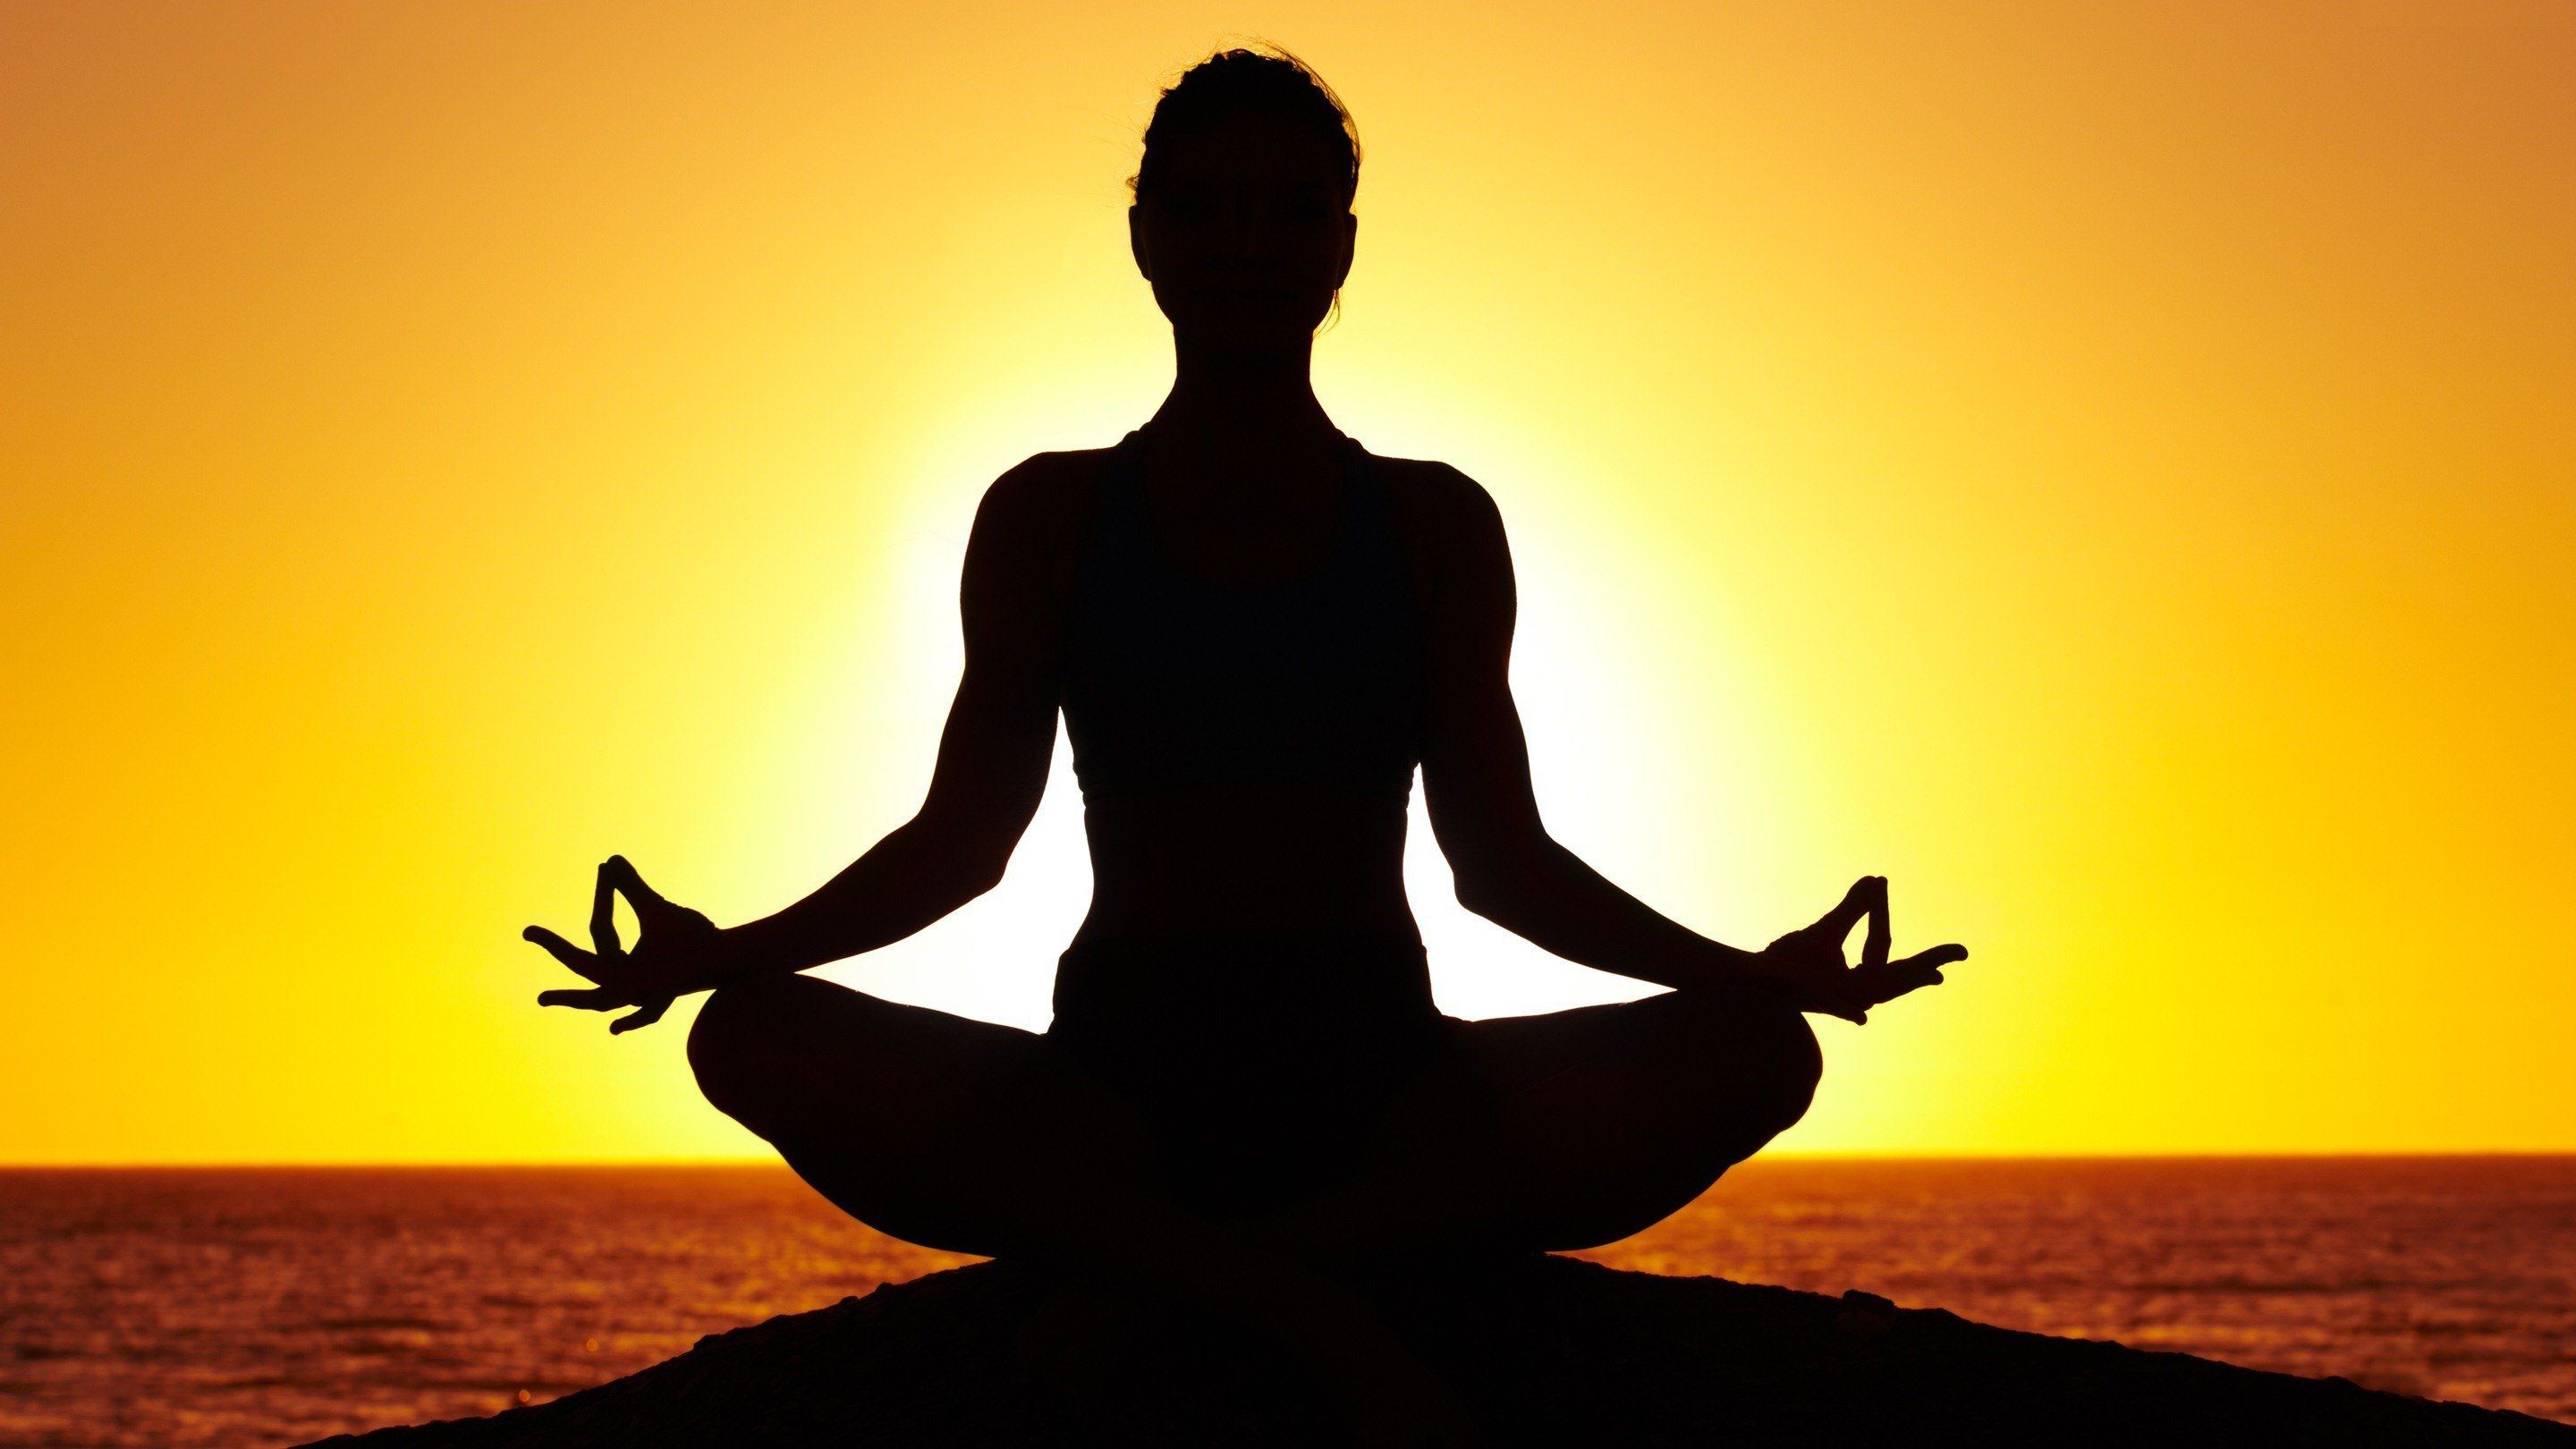 Meditation Yoga Wallpapers - Top Những Hình Hình ảnh Đẹp